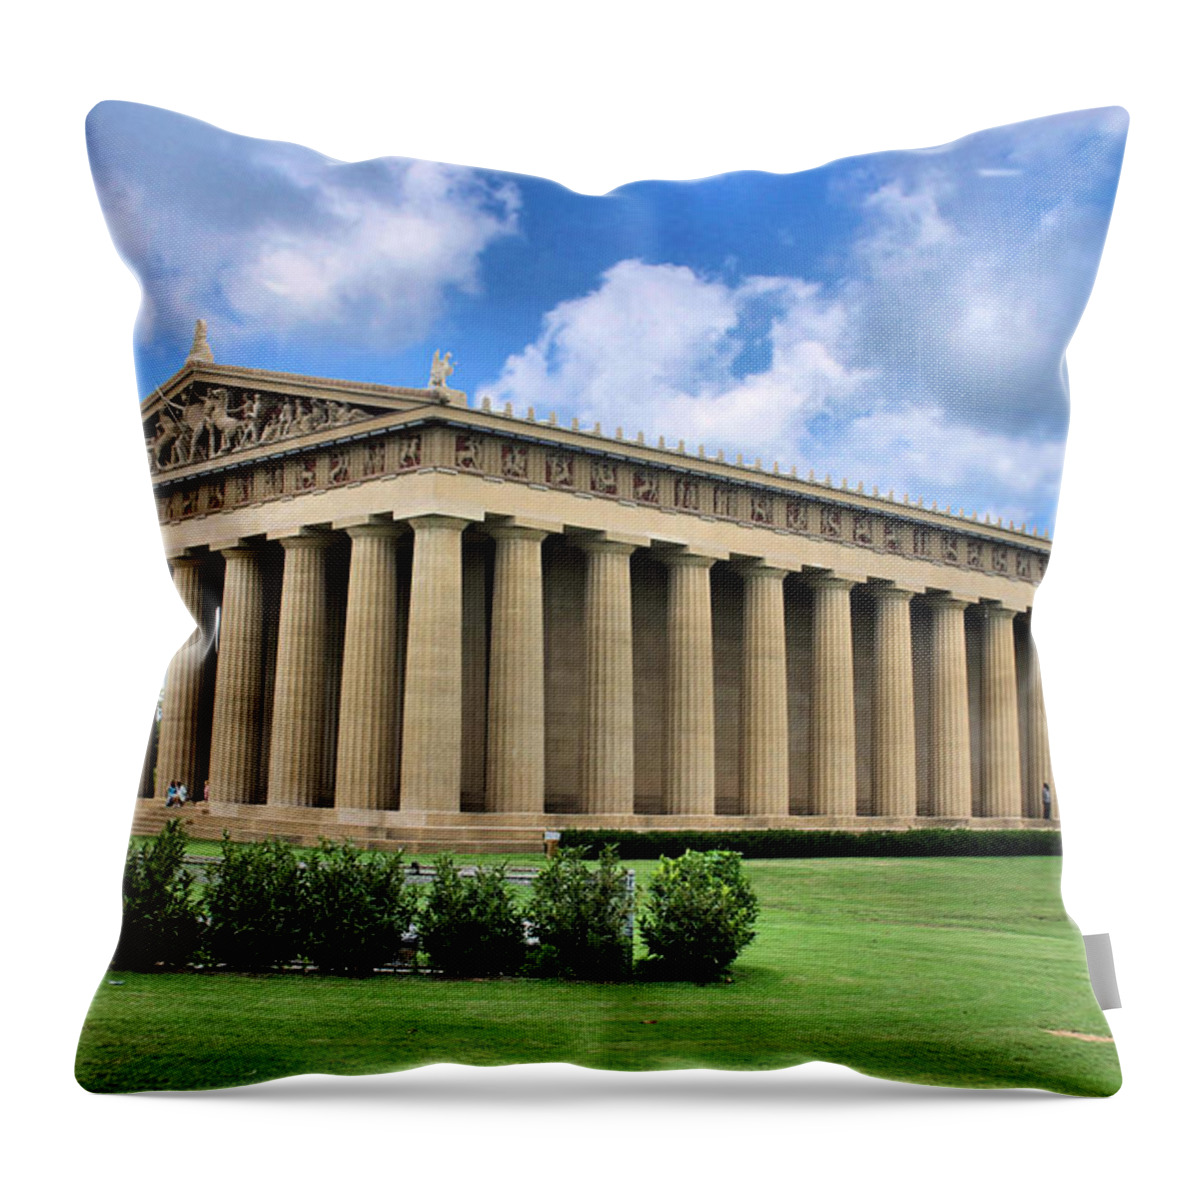 Parthenon Throw Pillow featuring the photograph The Parthenon by Kristin Elmquist